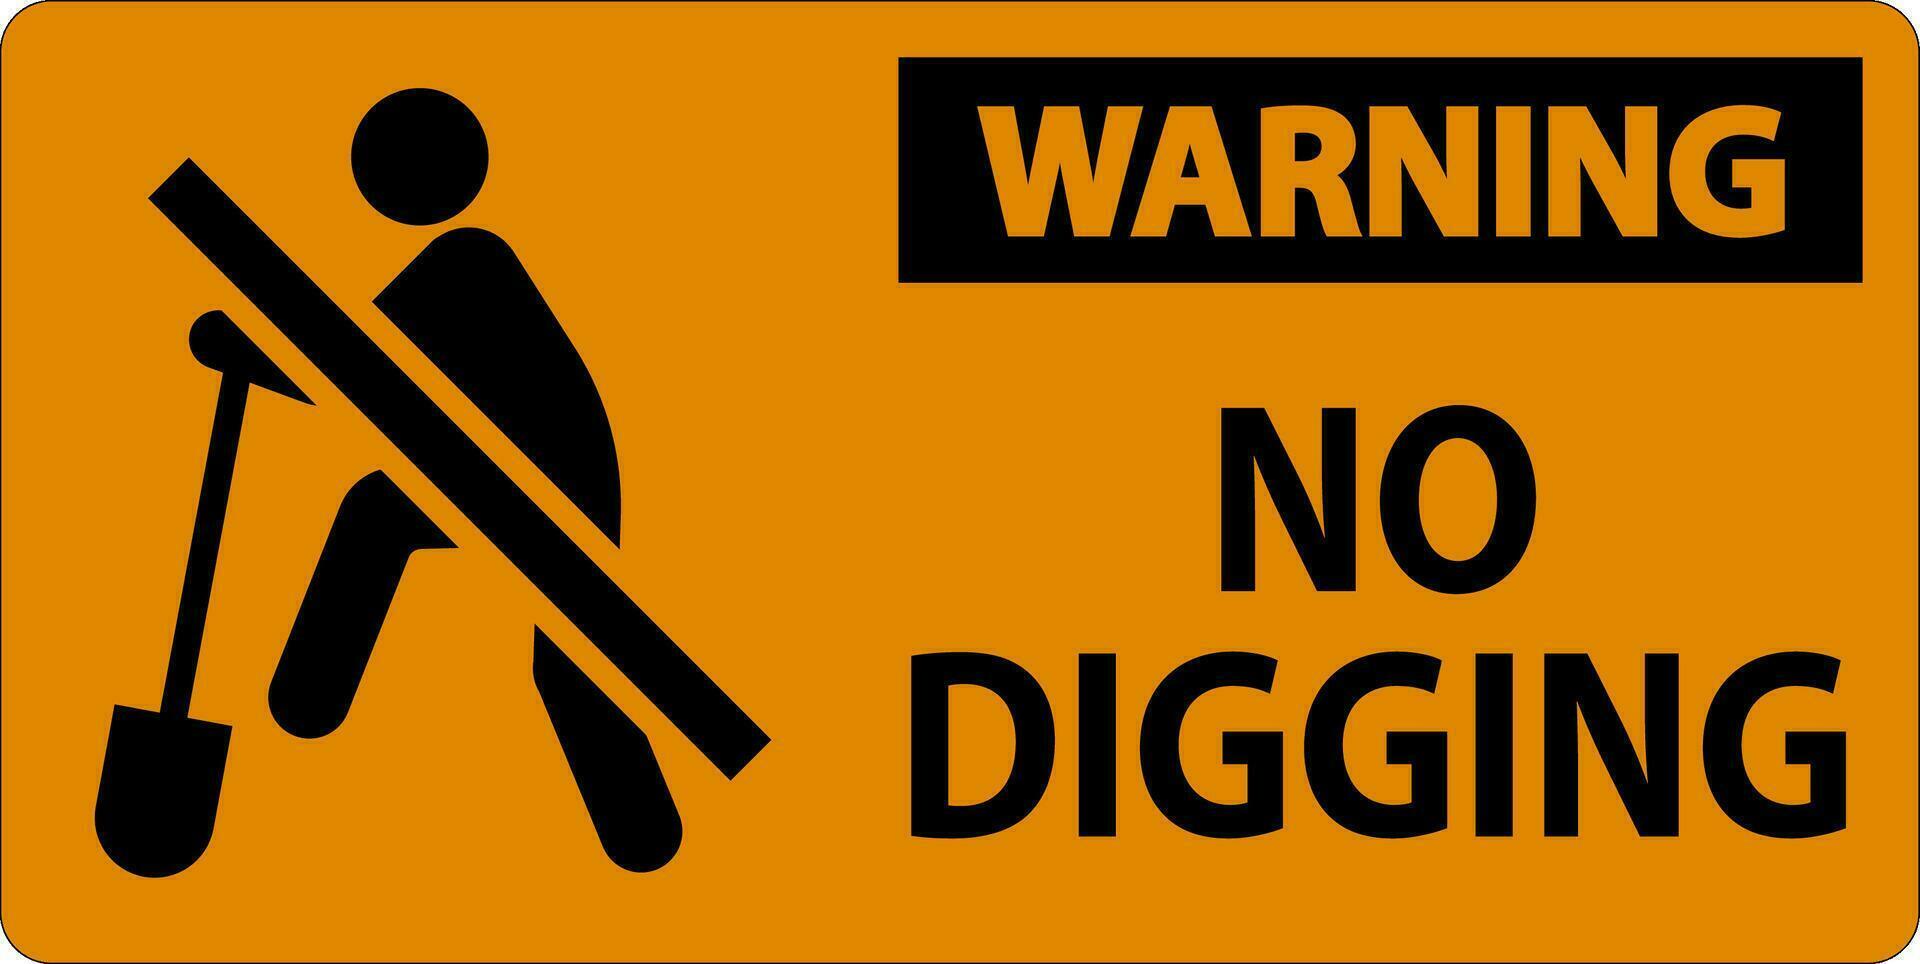 varning tecken, Nej grävning tecken vektor